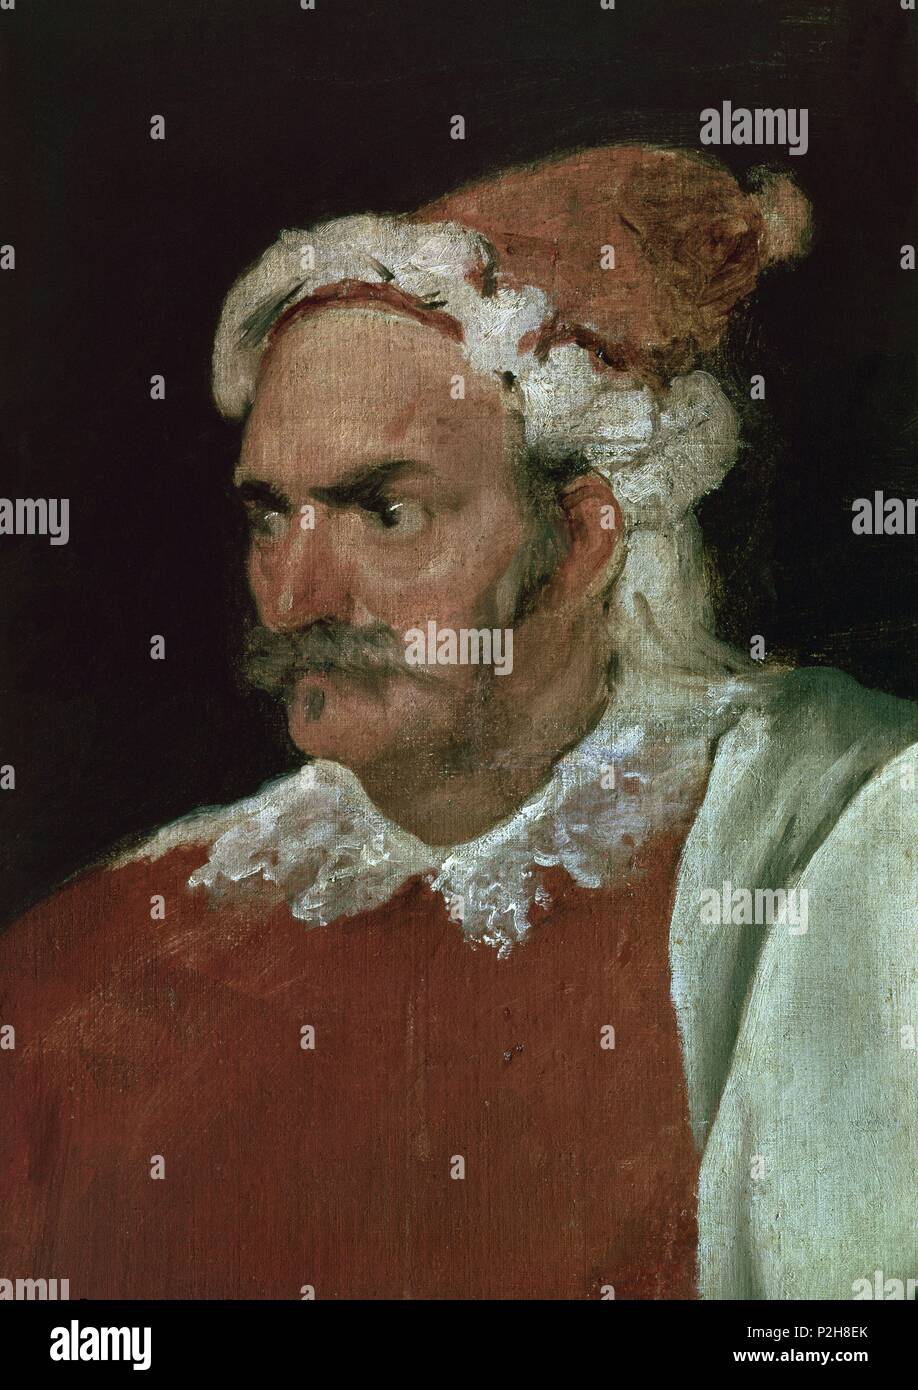 'The Buffoon, 'Redbeard', Cristóbal de Castañeda y Pernía' (detail), ca. 1633, Spanish School, Oil on canvas, P01199. Author: Diego Velázquez (1599-1660). Location: MUSEO DEL PRADO-PINTURA, MADRID, SPAIN. Stock Photo